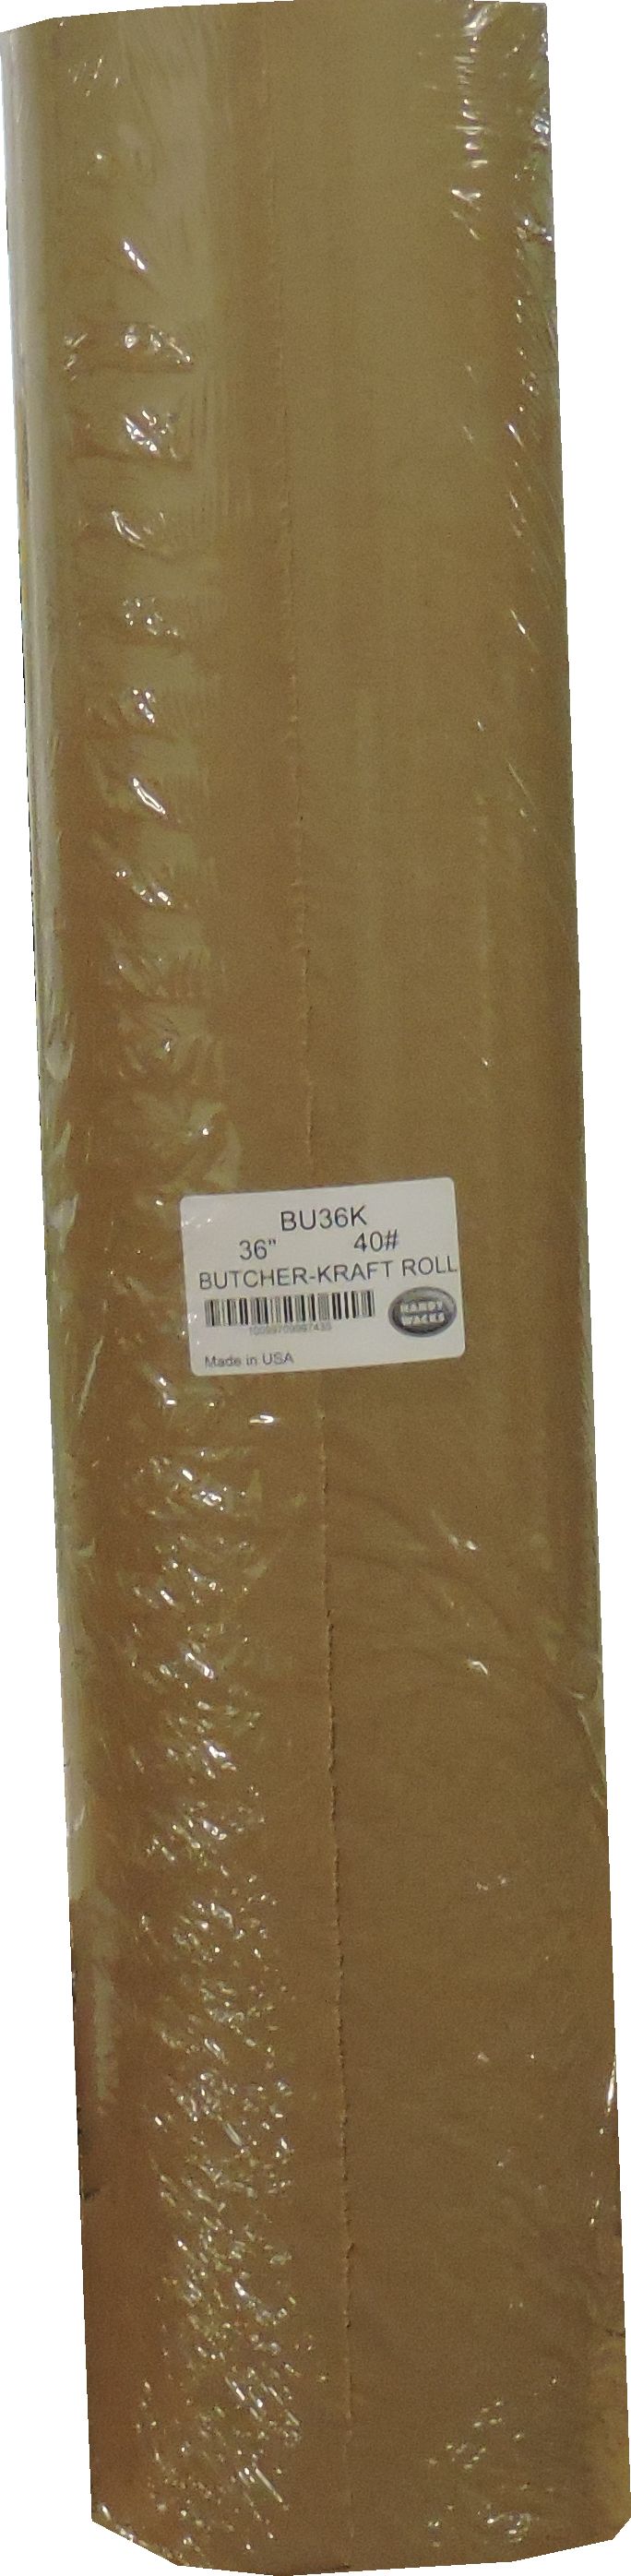 Handy Wacks Butcher Paper 36 Inch Brown-900 Foot-1/Case